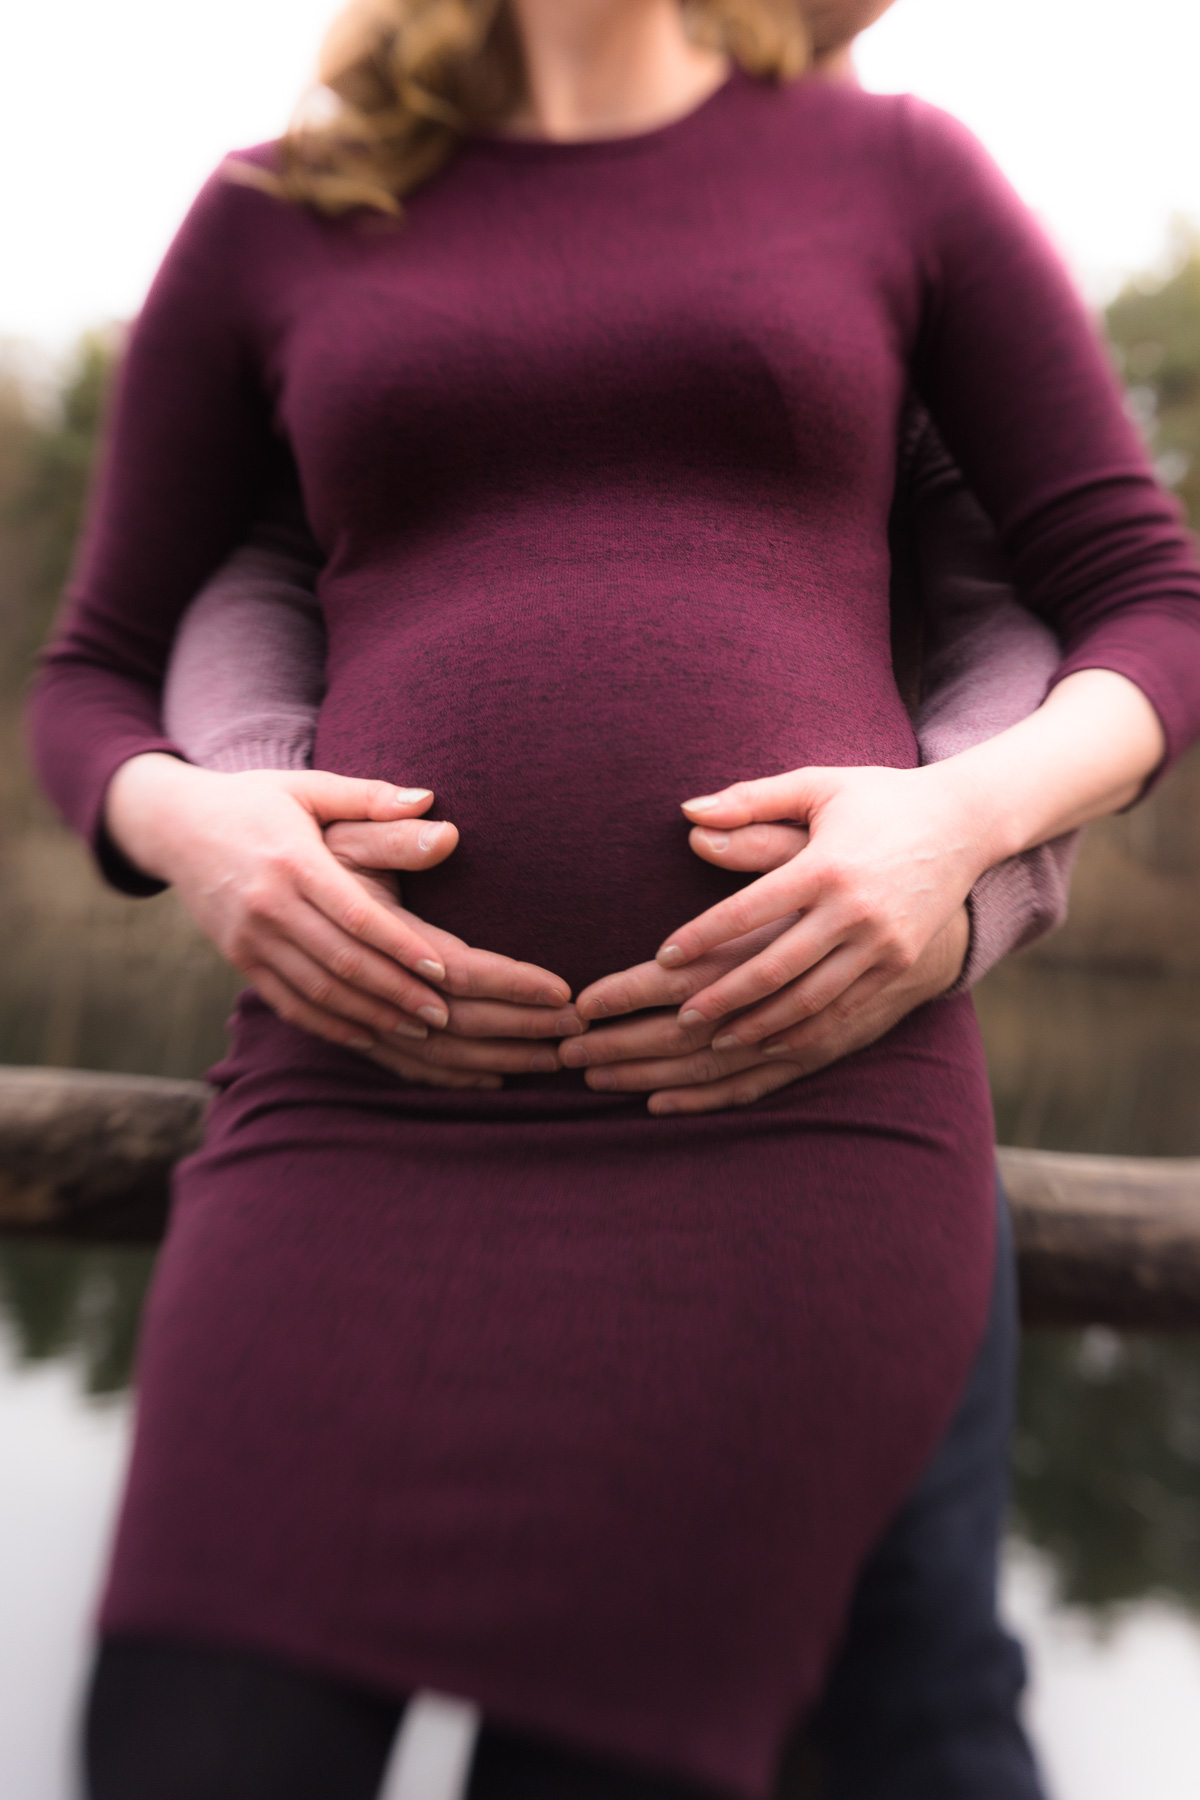 Der Babybauch einer schwangeren Frau im dunkel purpurrotem Kleid frontal, während der Bauch von hinten durch die Hände eines Mannes umfasst wird. Die Frau hat ihre Hände auf die Hände des Mannes aufgelegt.